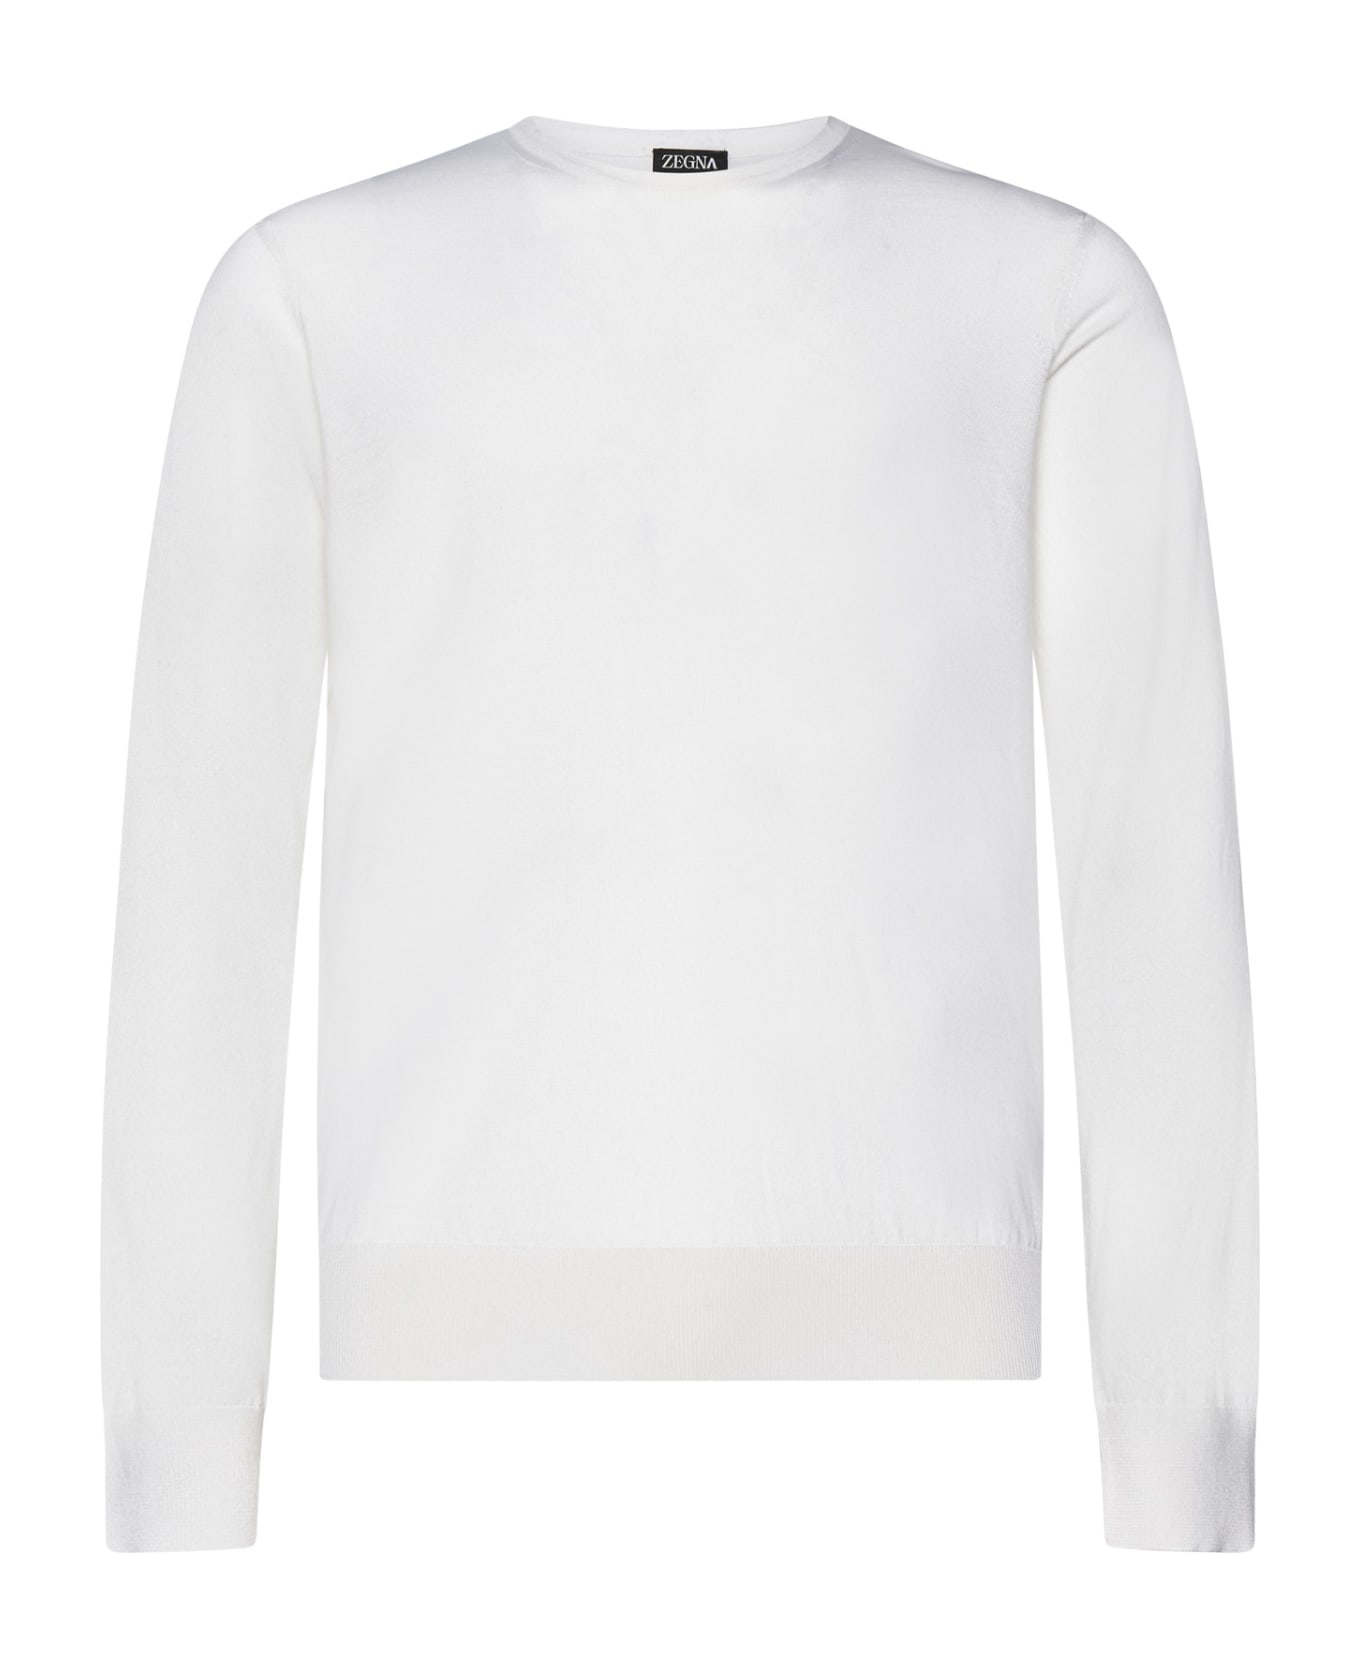 Ermenegildo Zegna Sweater - White